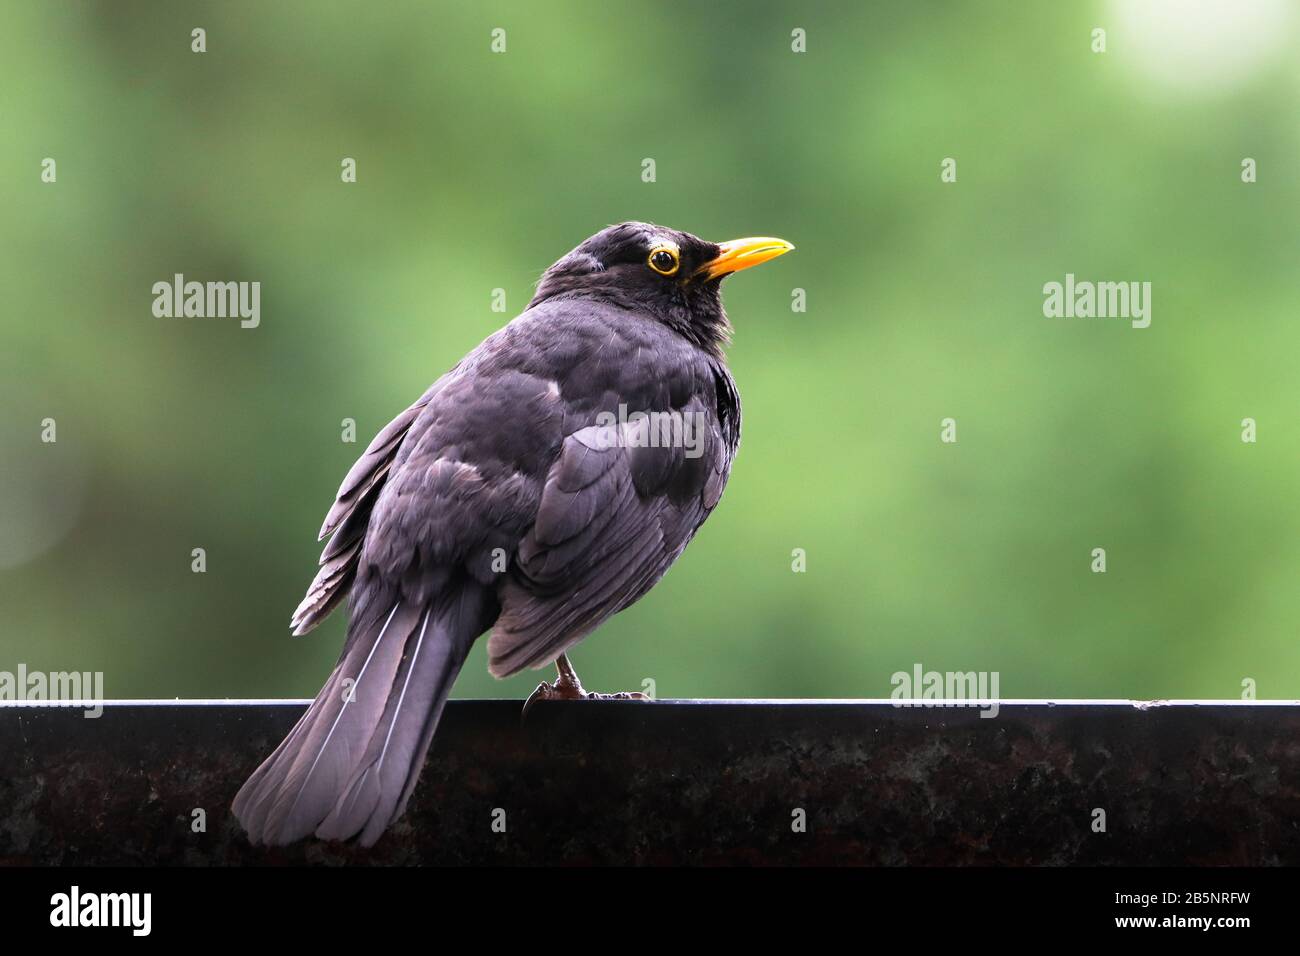 Pájaro macho Blackbird observando sentado en piedra. Pájaro negro pájaro negro songbird sentado en la roca con fondo verde bokeh fuera de foco. Perfil de pájaro portra Foto de stock